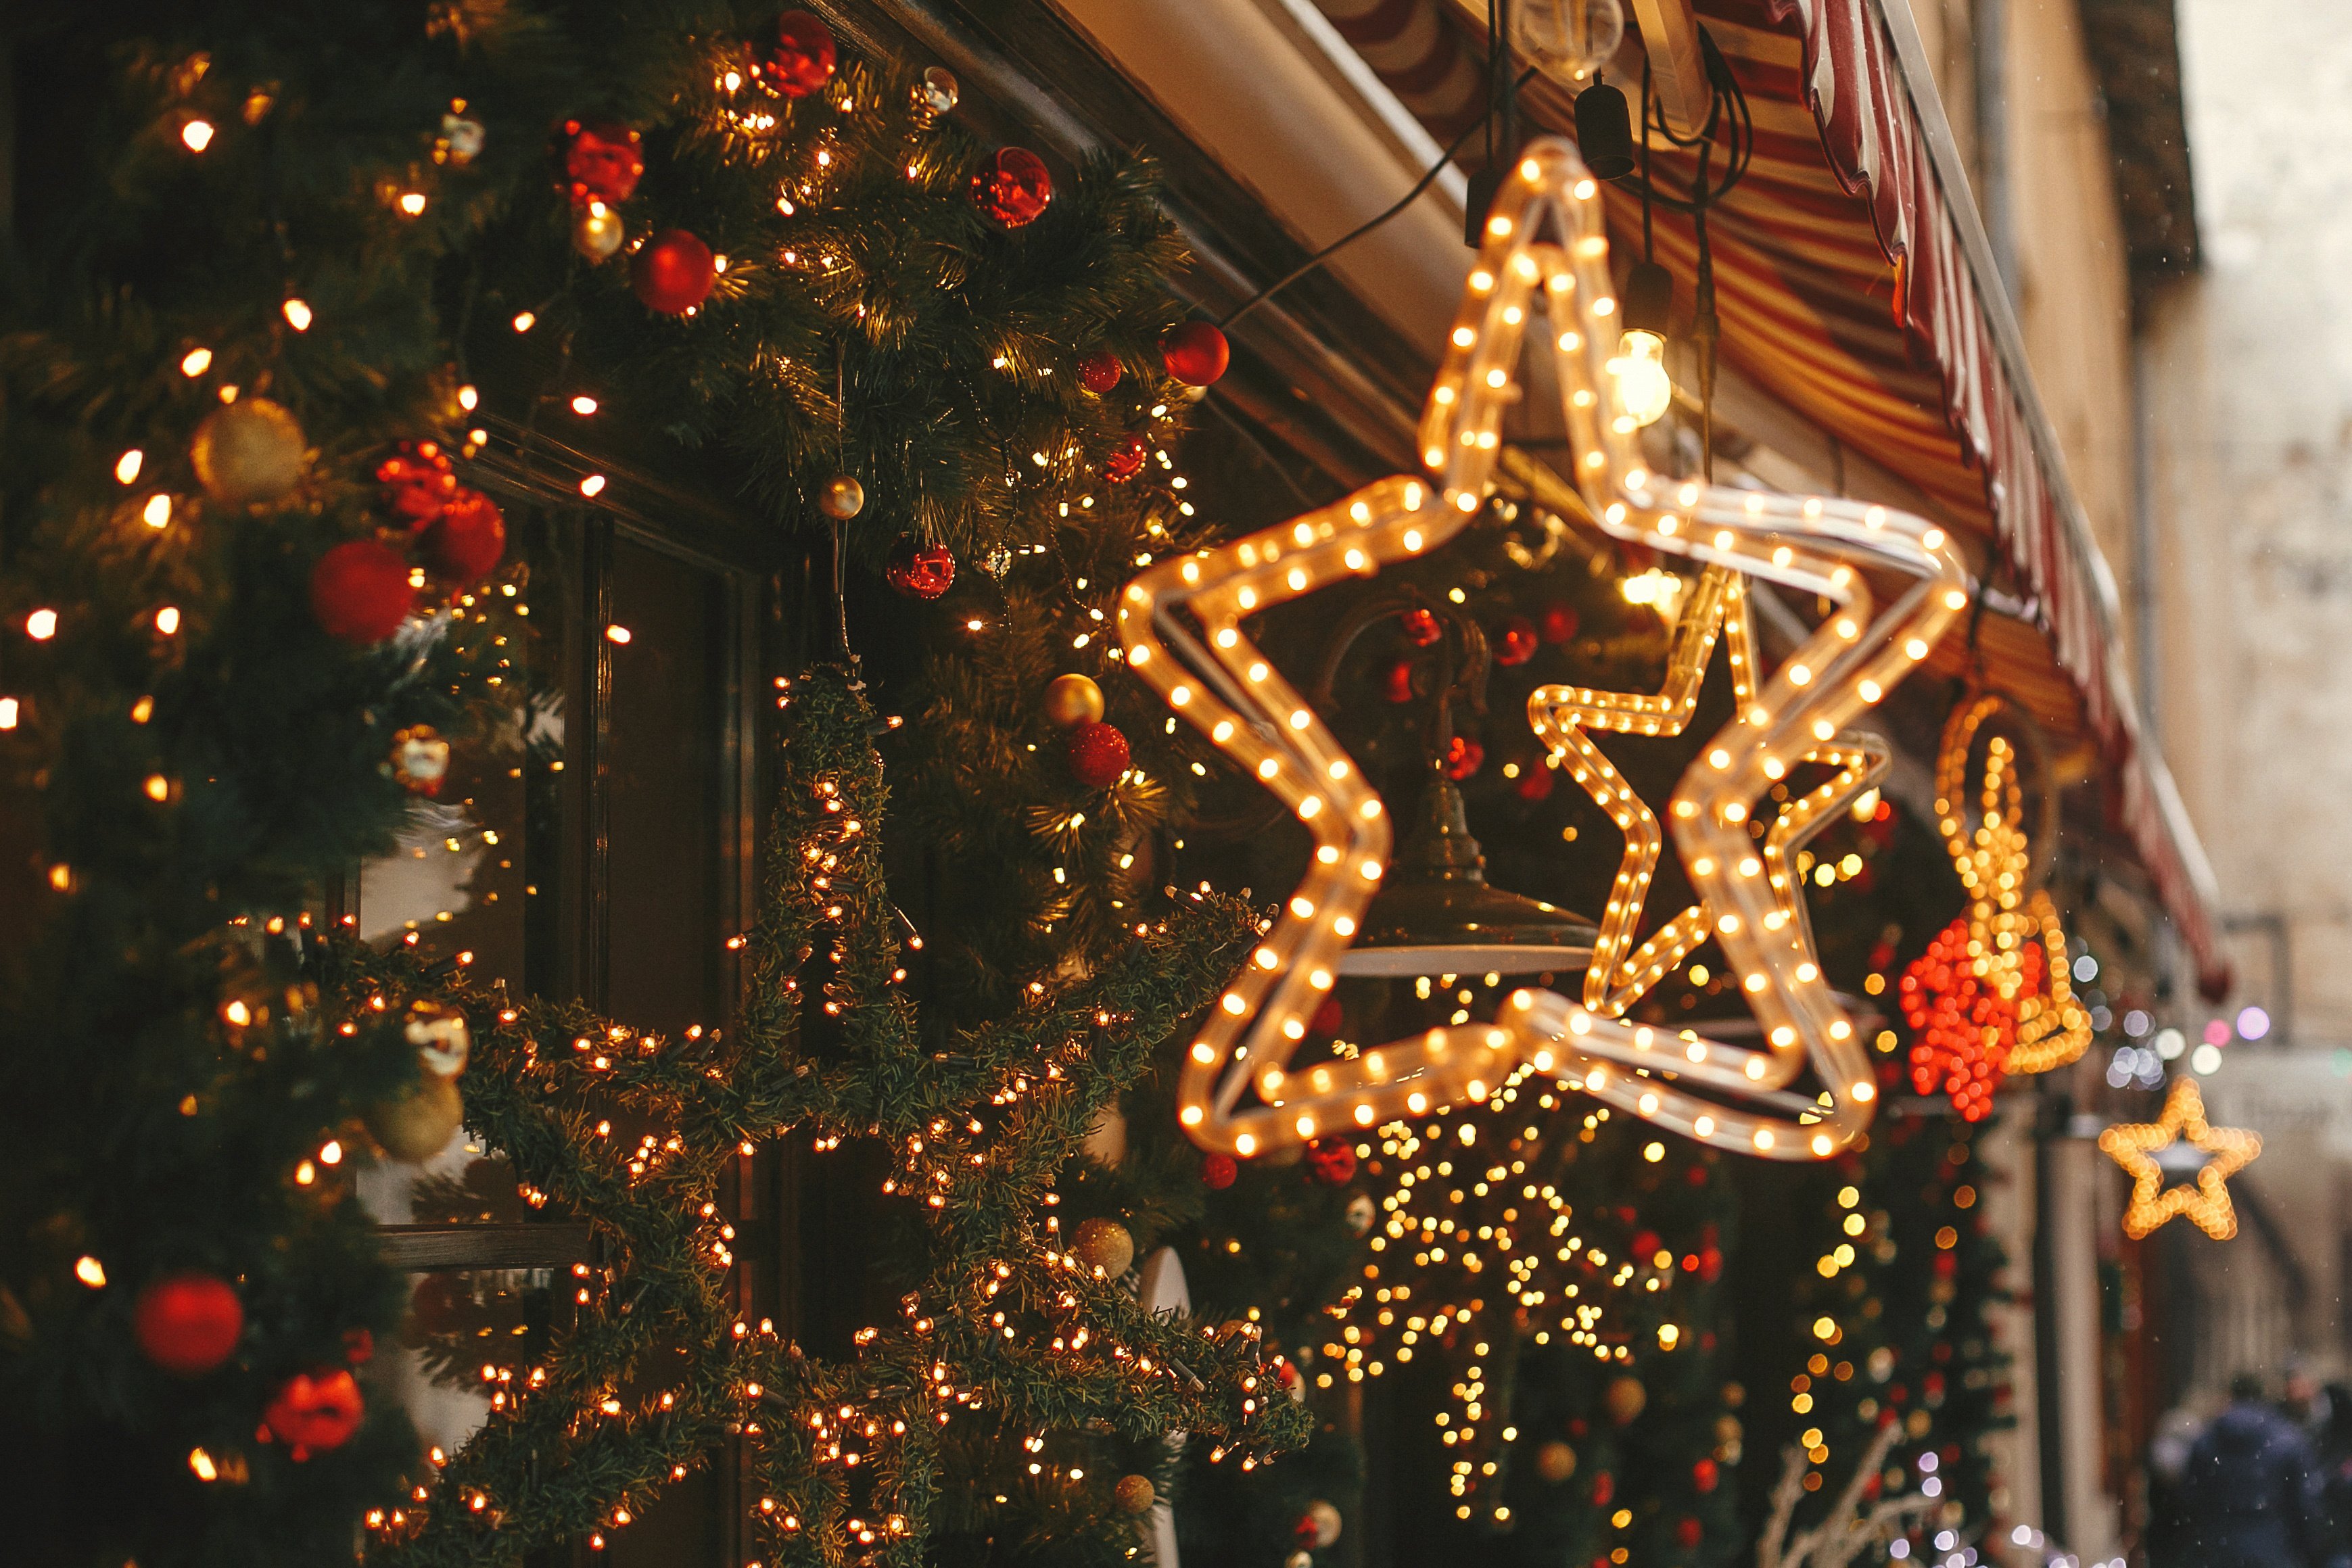 Tree Lighting and Christmas Market Image 